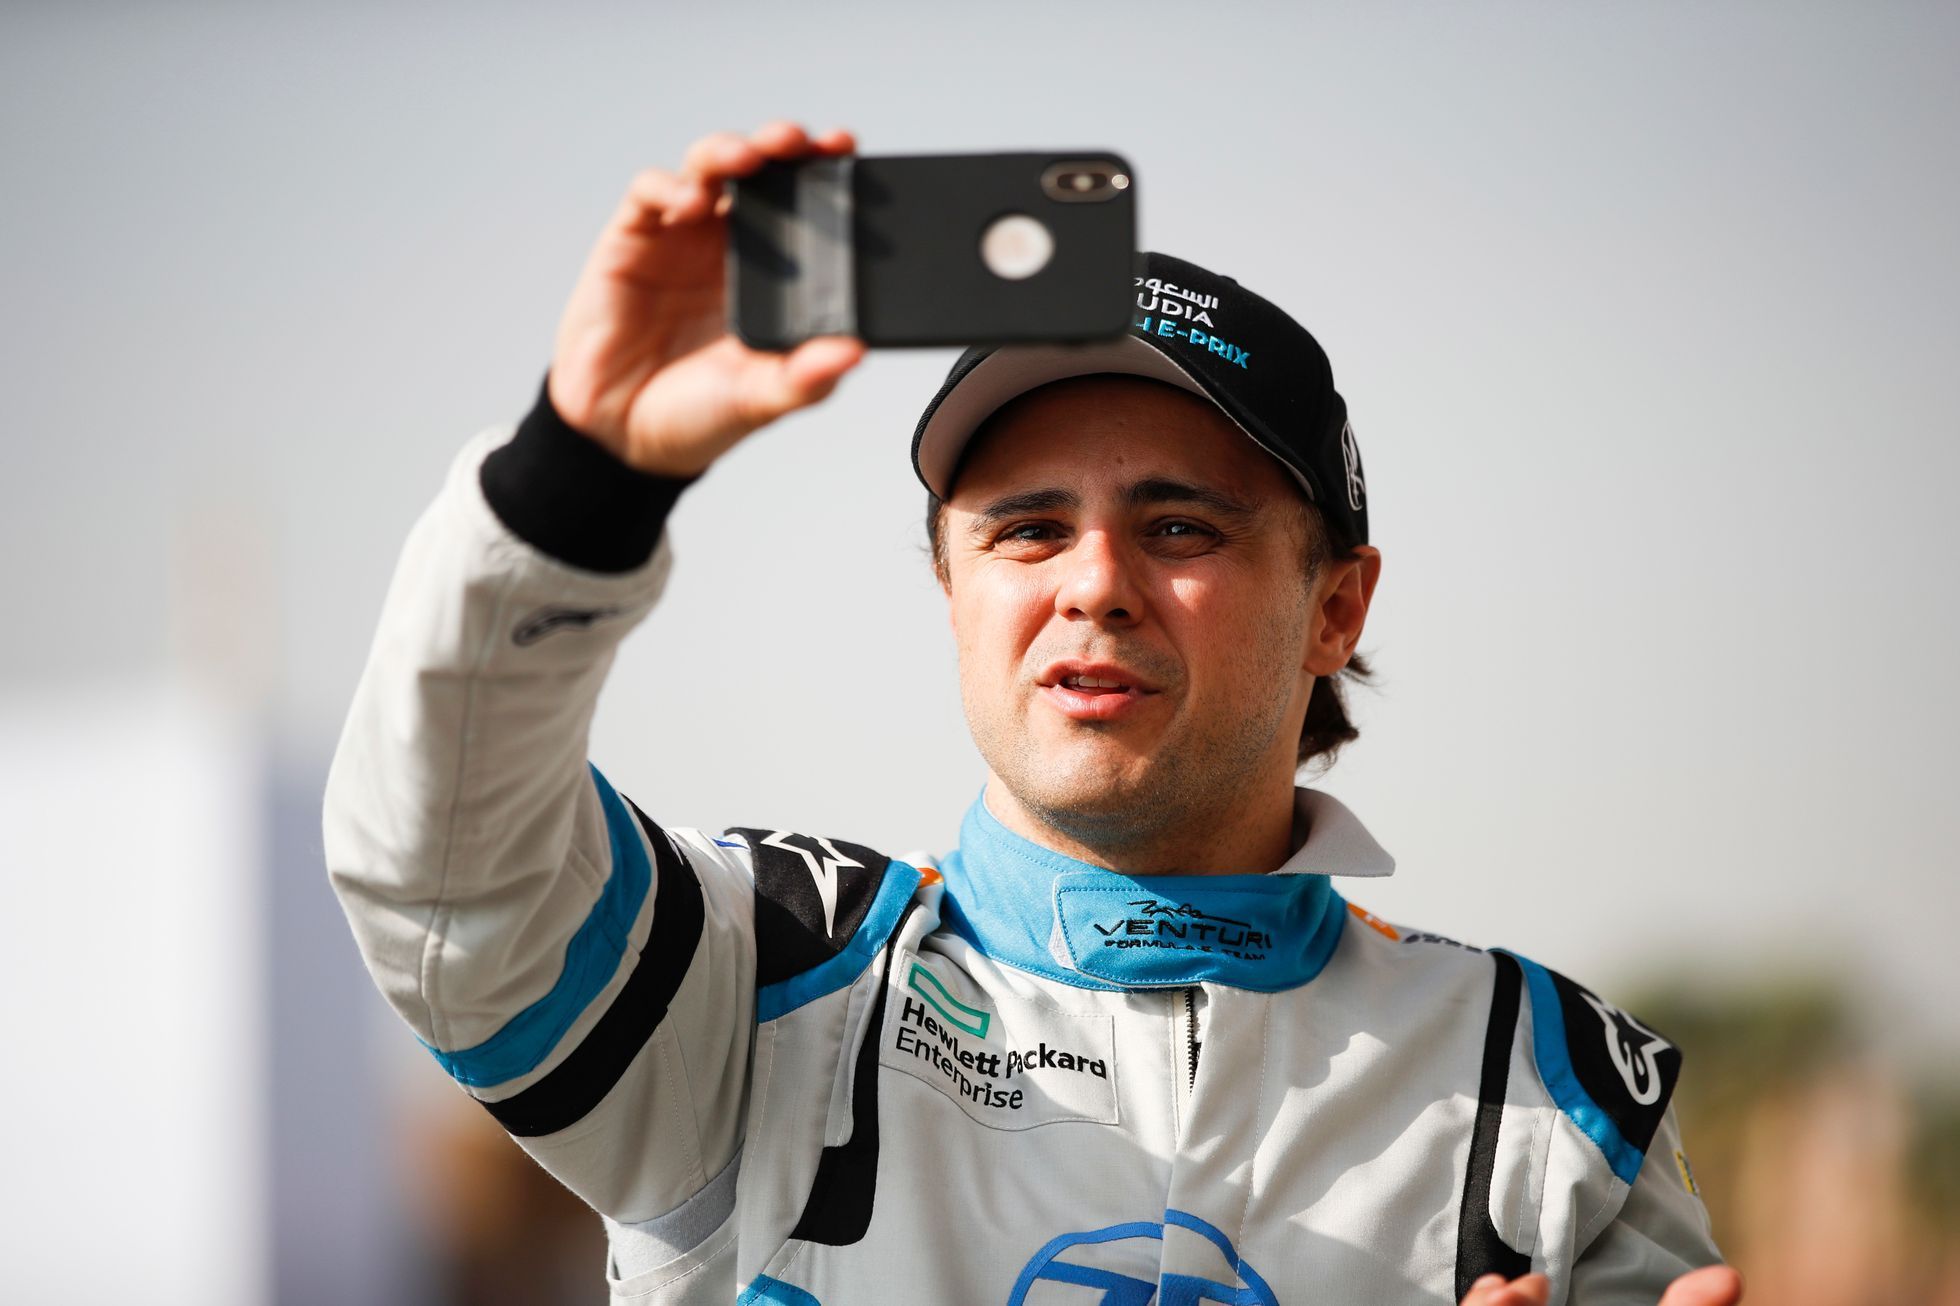 Formule E, Rijád 2018: Felipe Massa